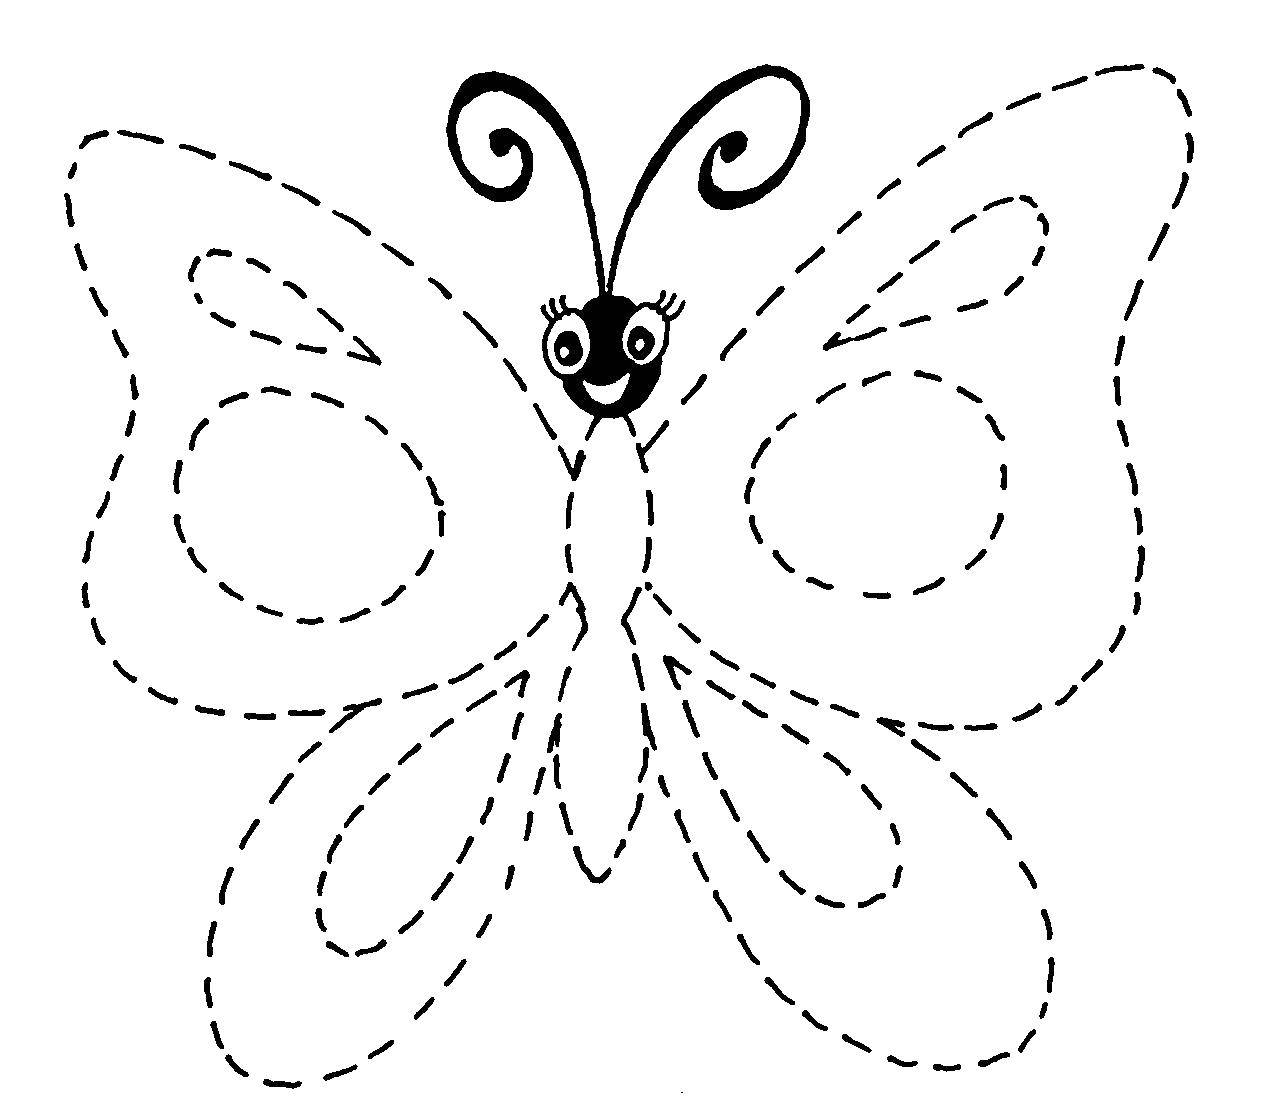 Насекомые: раскраски с изображениями бабочек, жуков и пчел (жуки, пчелы)